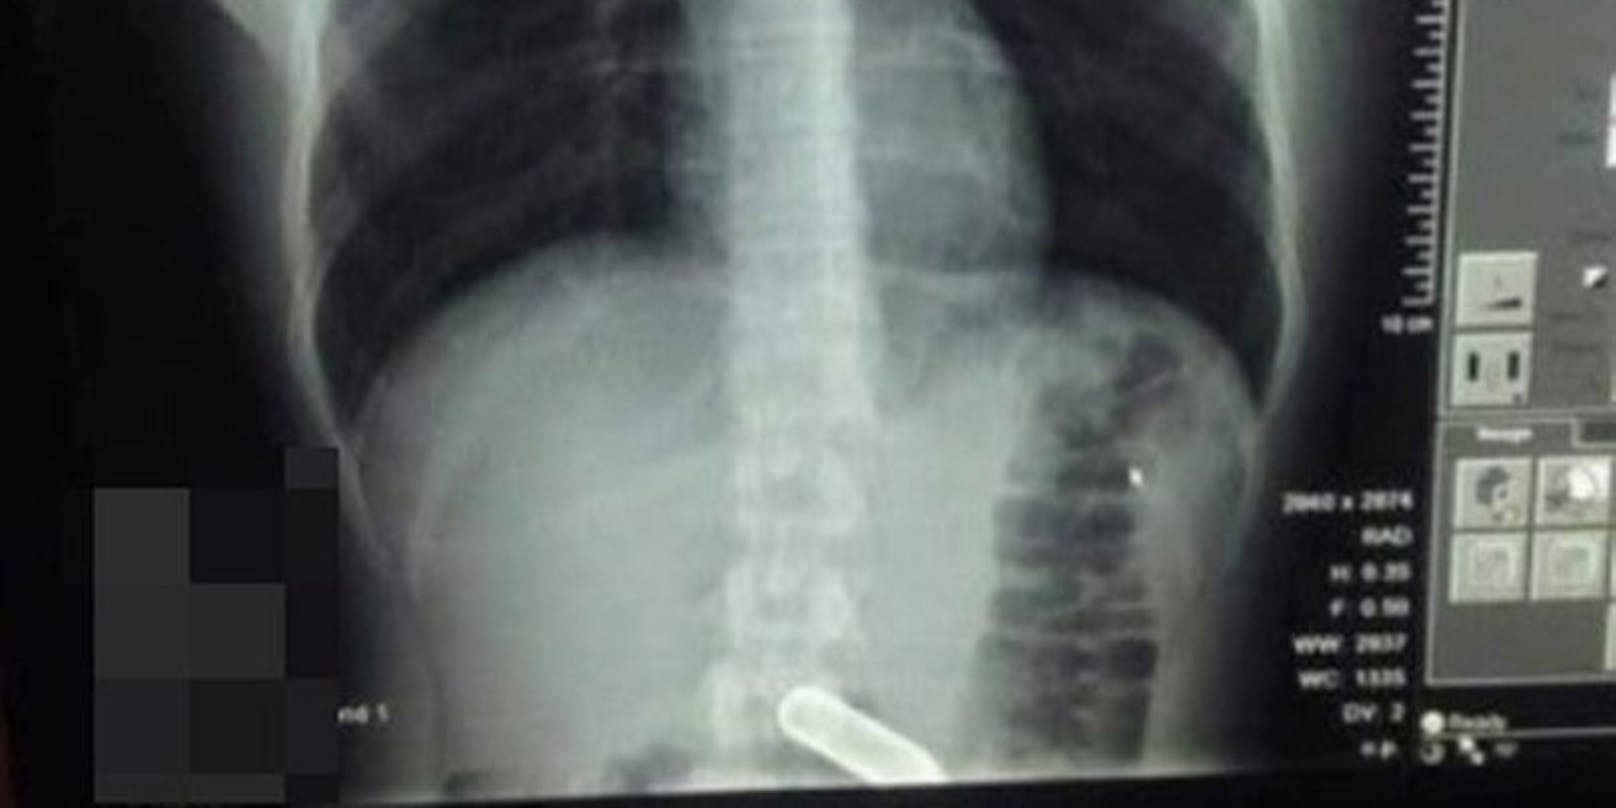 Das Röngtenbild zeigt die Lachgas-Kapsel im Magen des 22-Jährigen